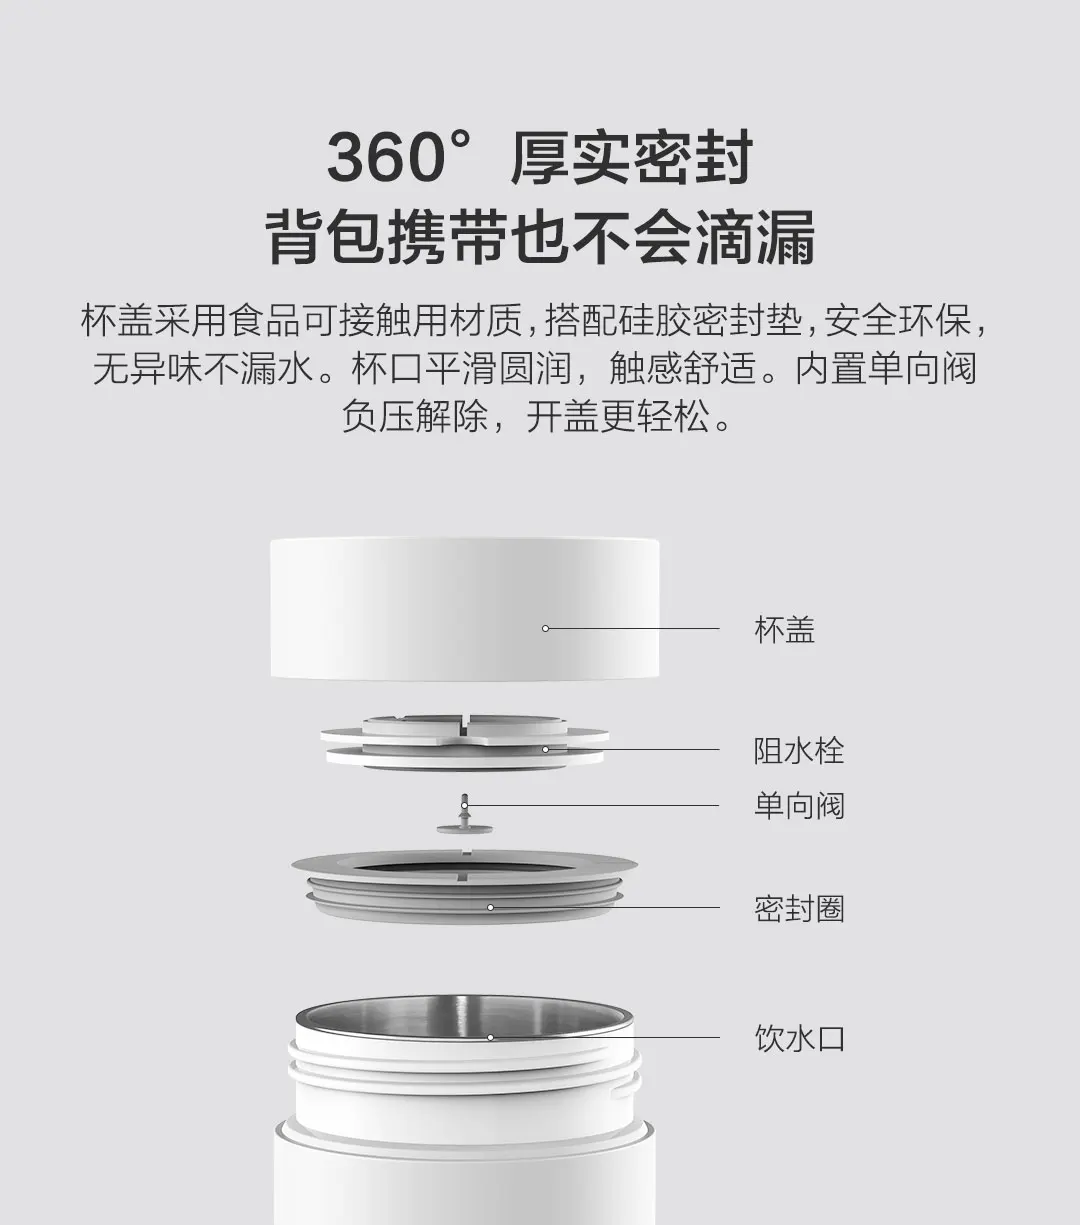 400 мл Xiaomi Mijia Yunmi электрическая чашка интеллектуальное управление температурой Prortable чашка 304 нержавеющая сталь для путешествий термос чашка